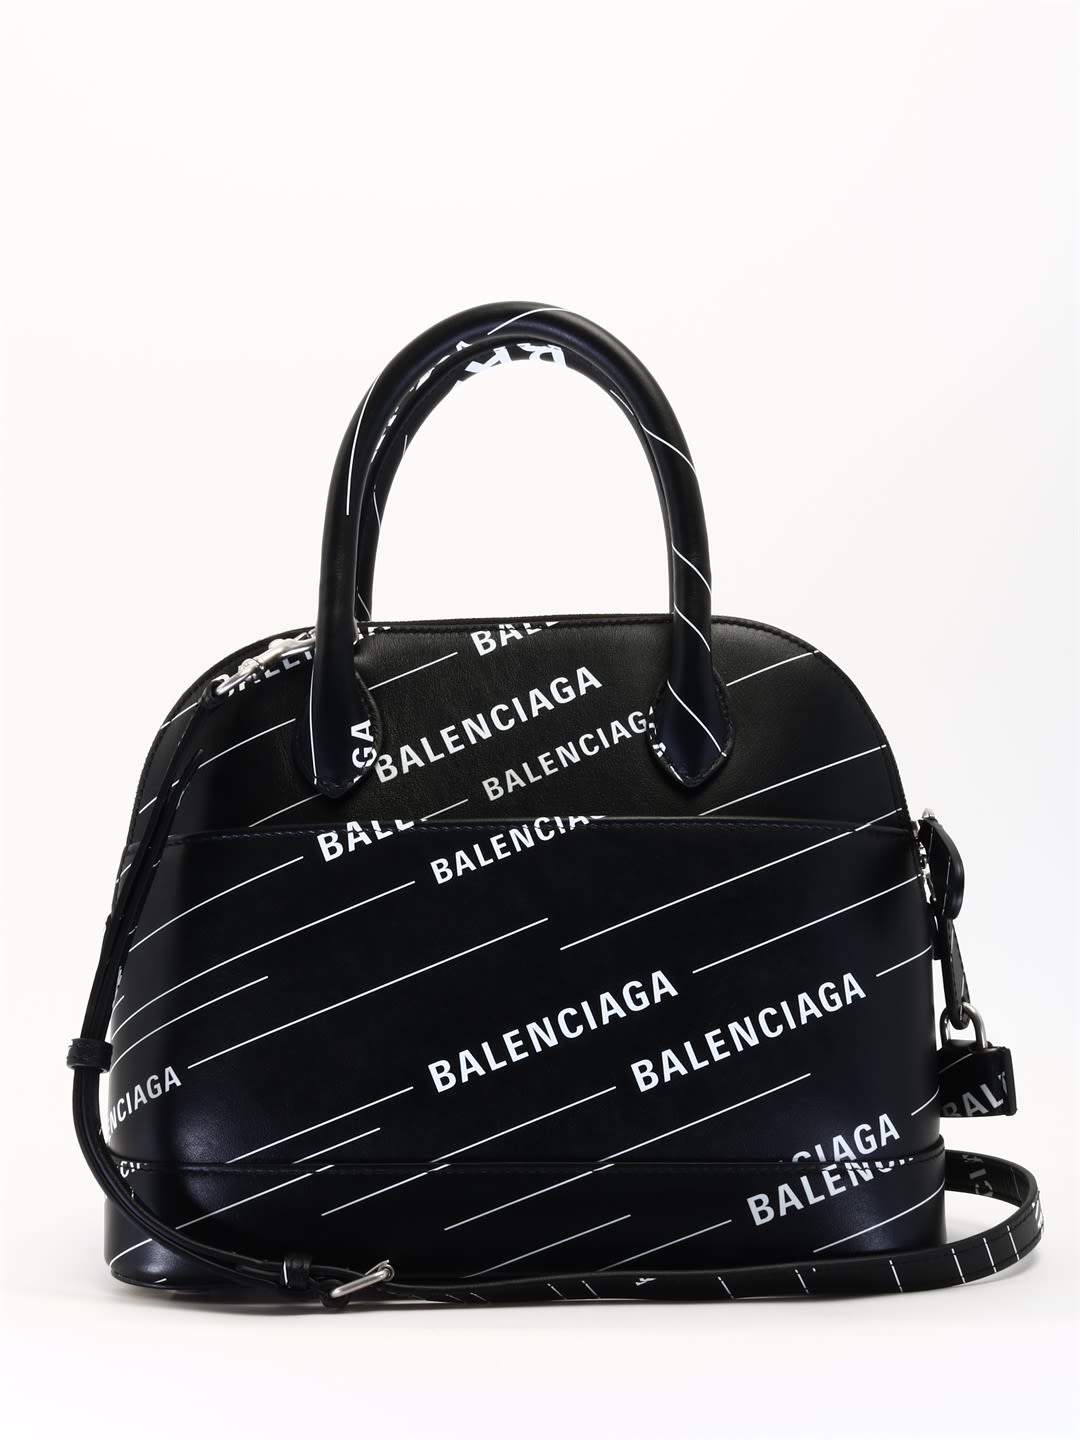 Balenciaga Black Handbag | semashow.com